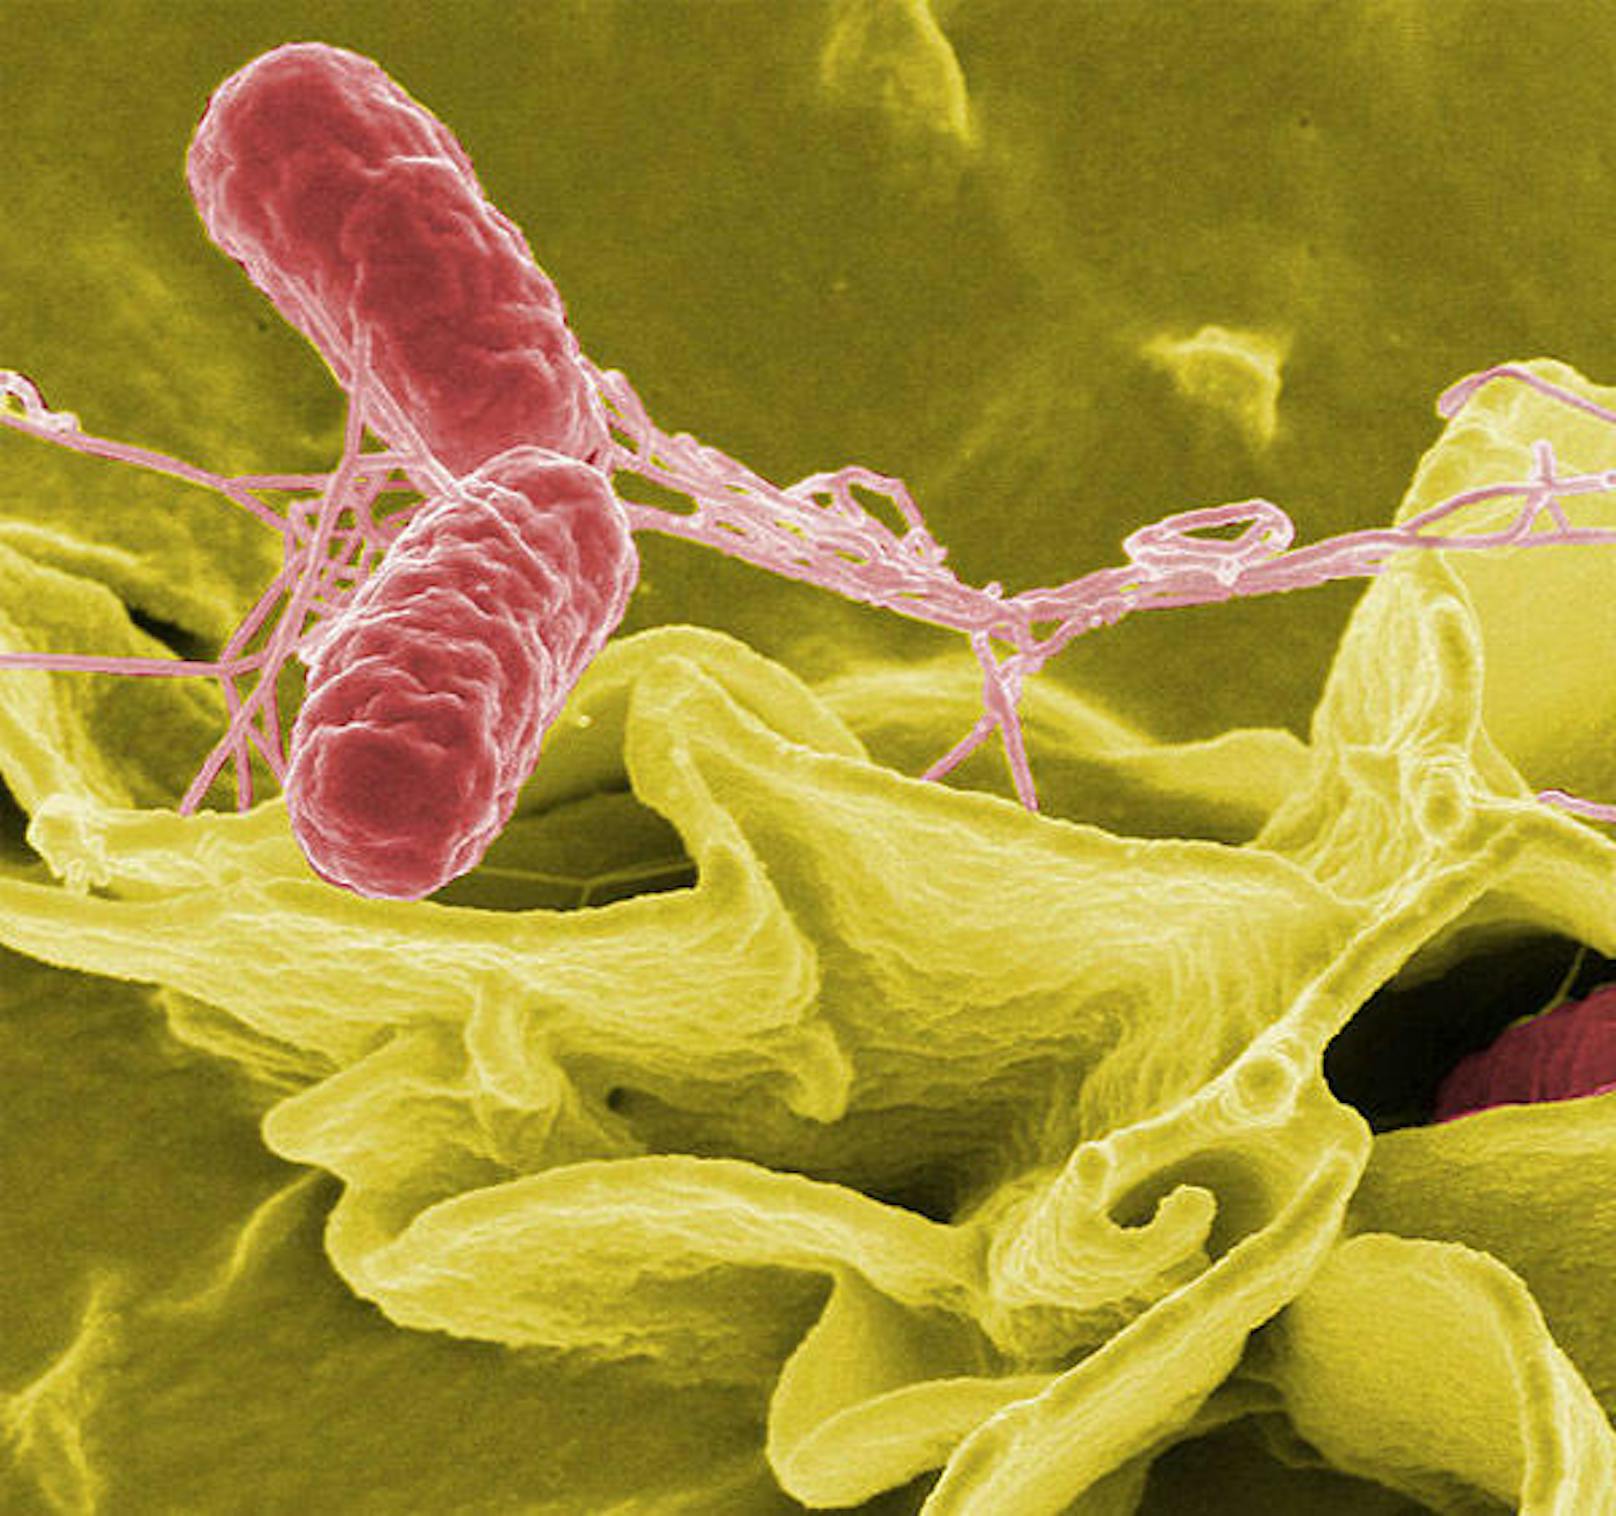 Salmonellae, Priorität 2: Salmonellen sind für viele Erkrankungen bei Mensch und Tier verantwortlich.